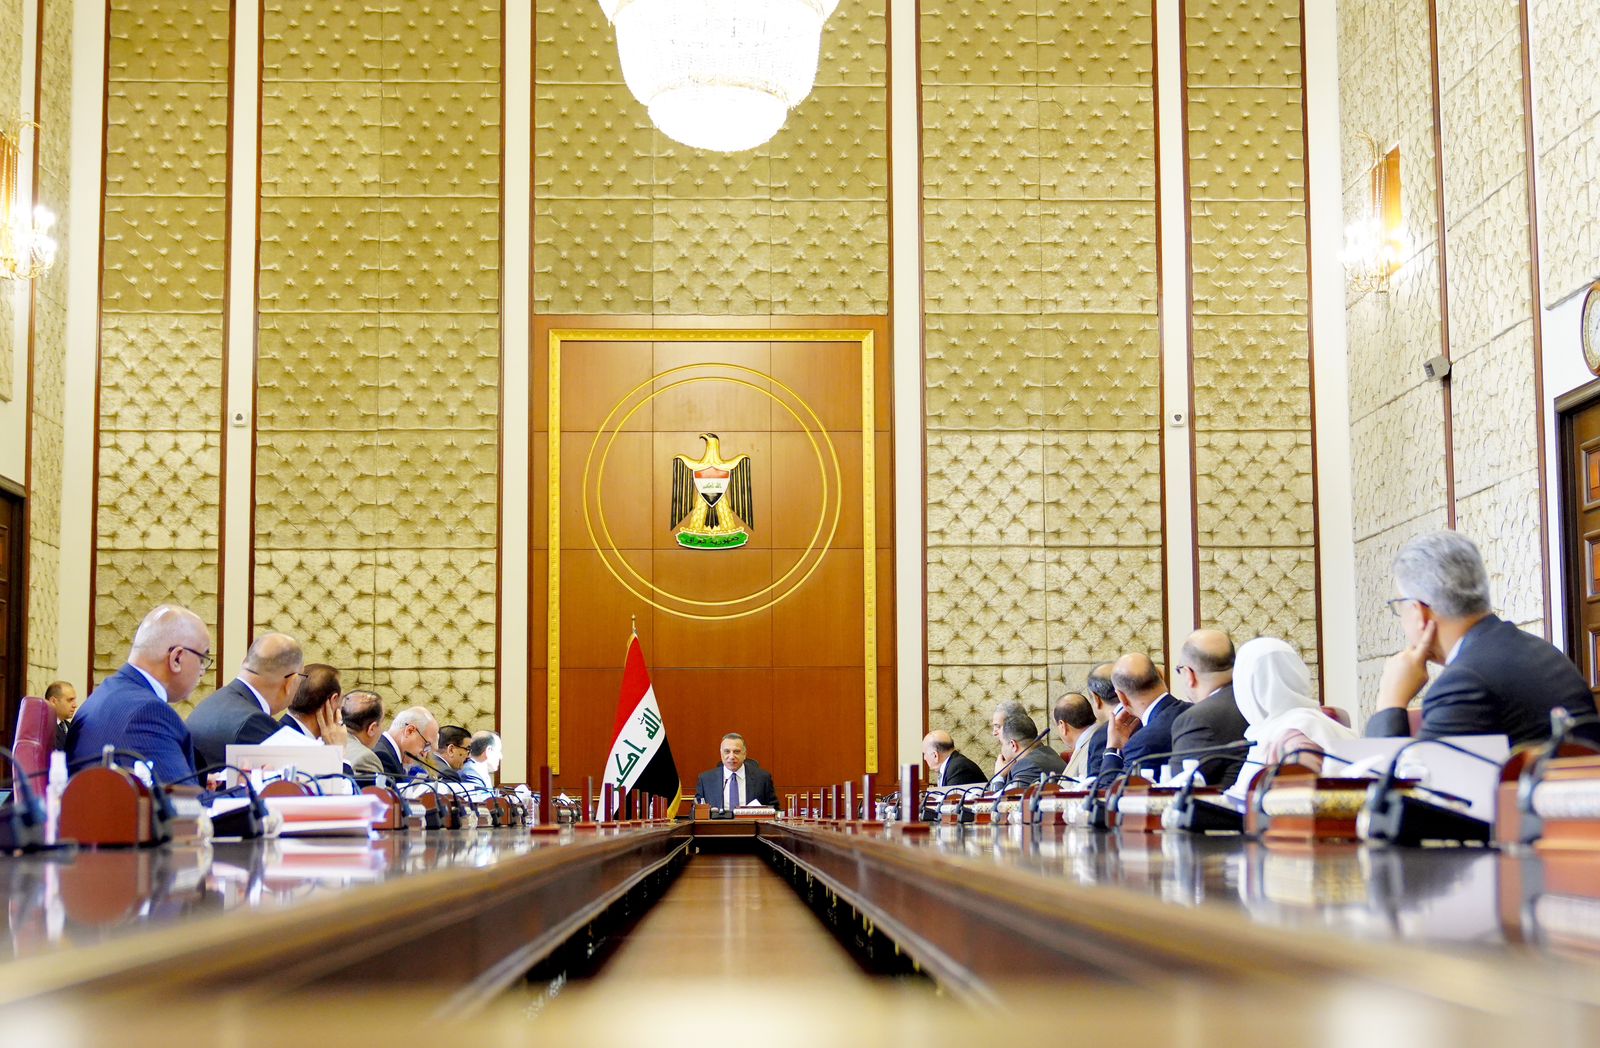 مجلس الوزراء العراقي يتخذ جملة من القرارات تتعلق بالزراعة والتربية والتعليم  